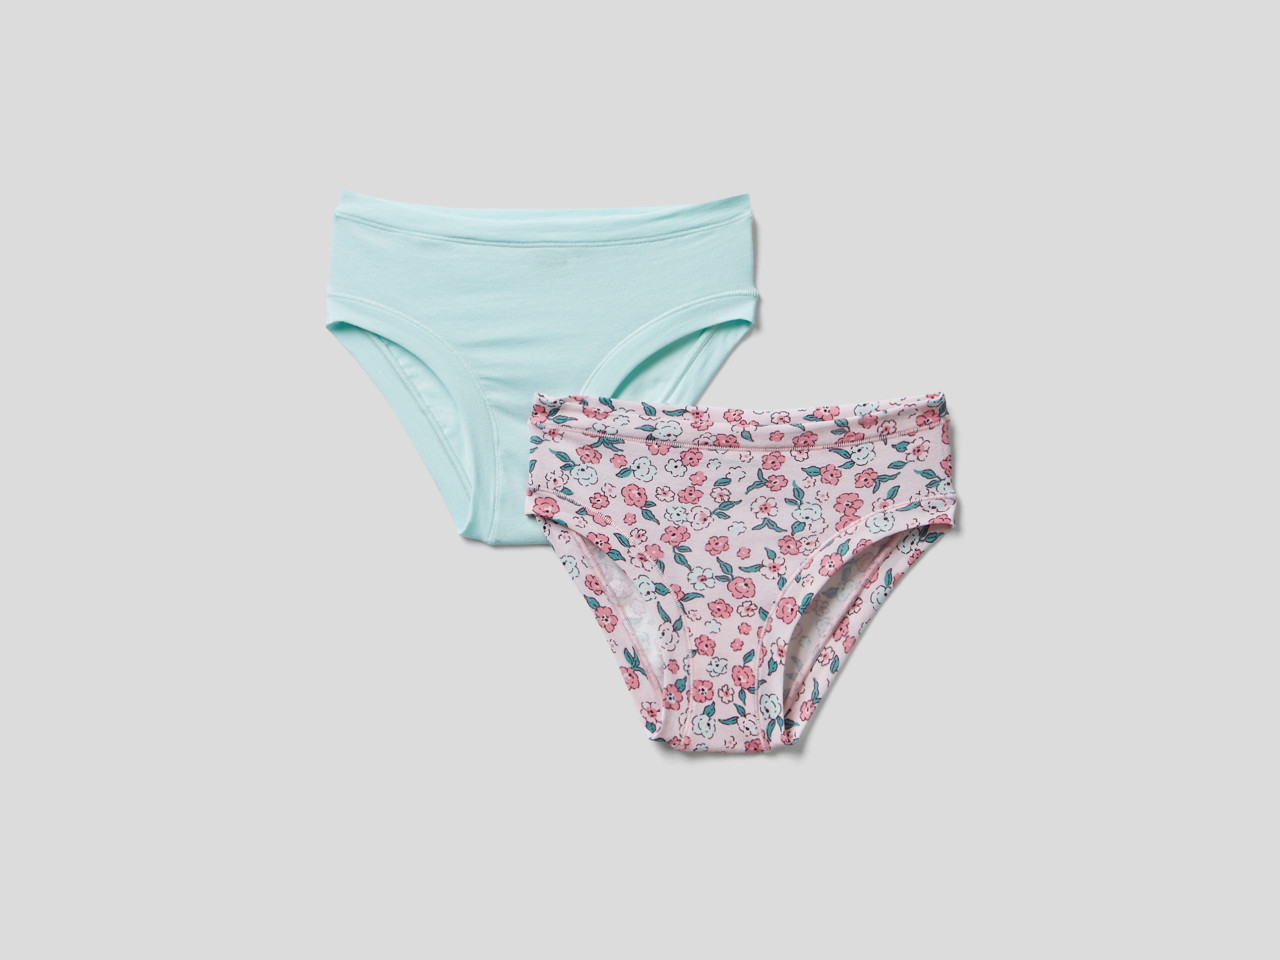 Natural Girl's Underwear 3 stuks 2-12 leeftijd Kleding Unisex kinderkleding Onderkleding slipjes en tanktops 100% biologisch katoen kinderondergoed huidvriendelijk-comfortabele kinderkleding 